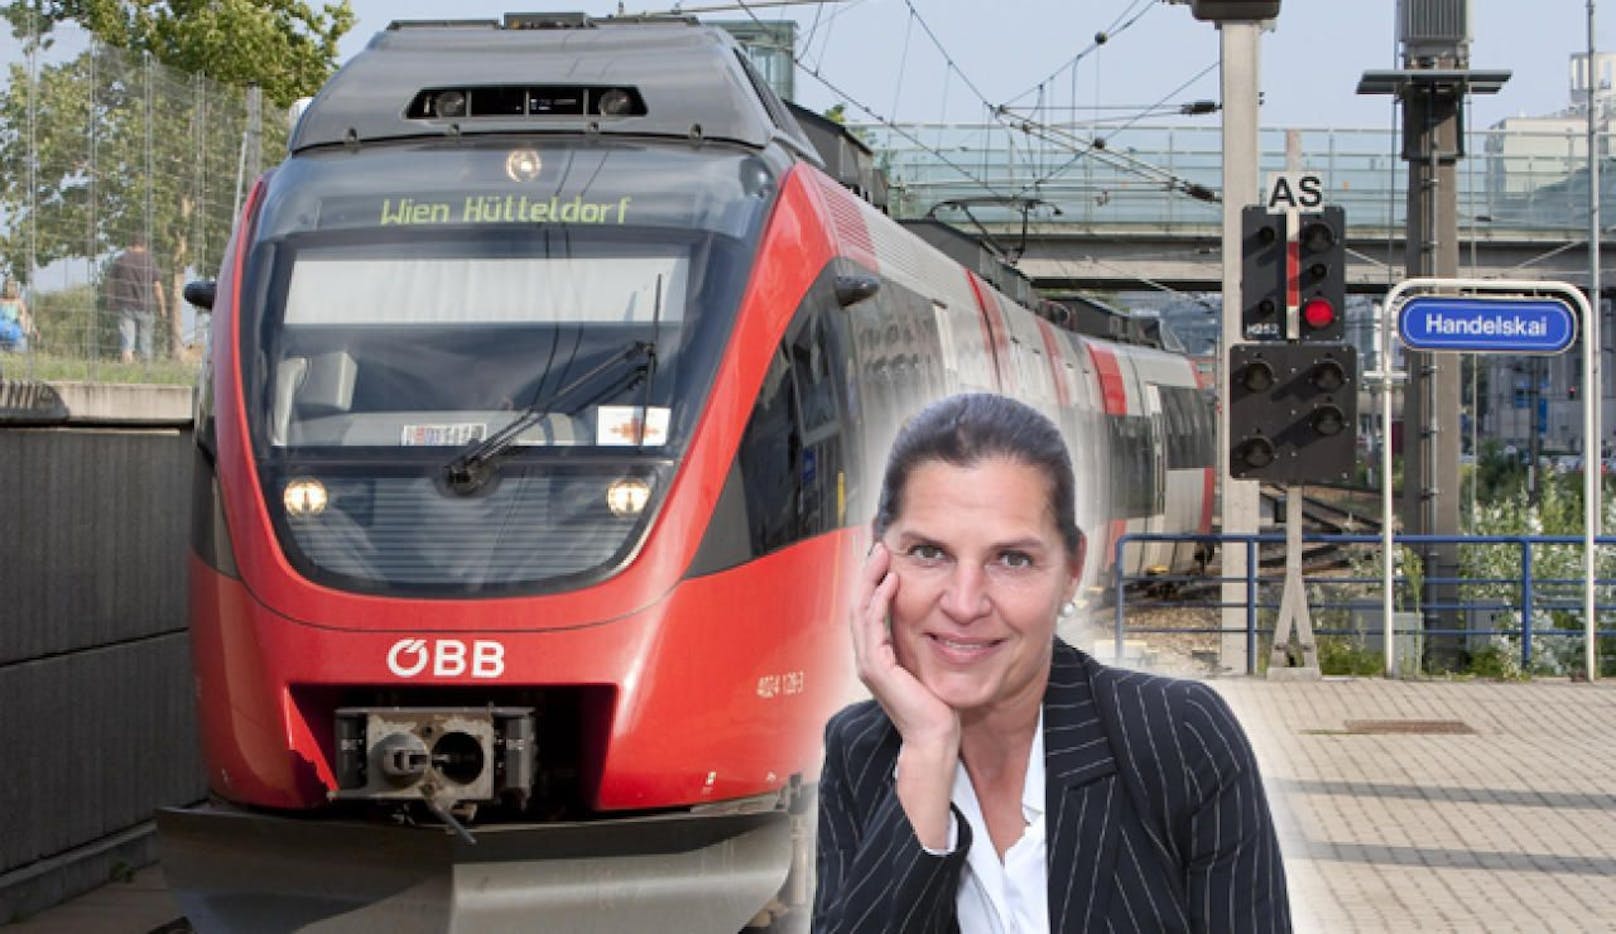 Am Weg zu Party: ORF-Lady von ÖBB "entführt"